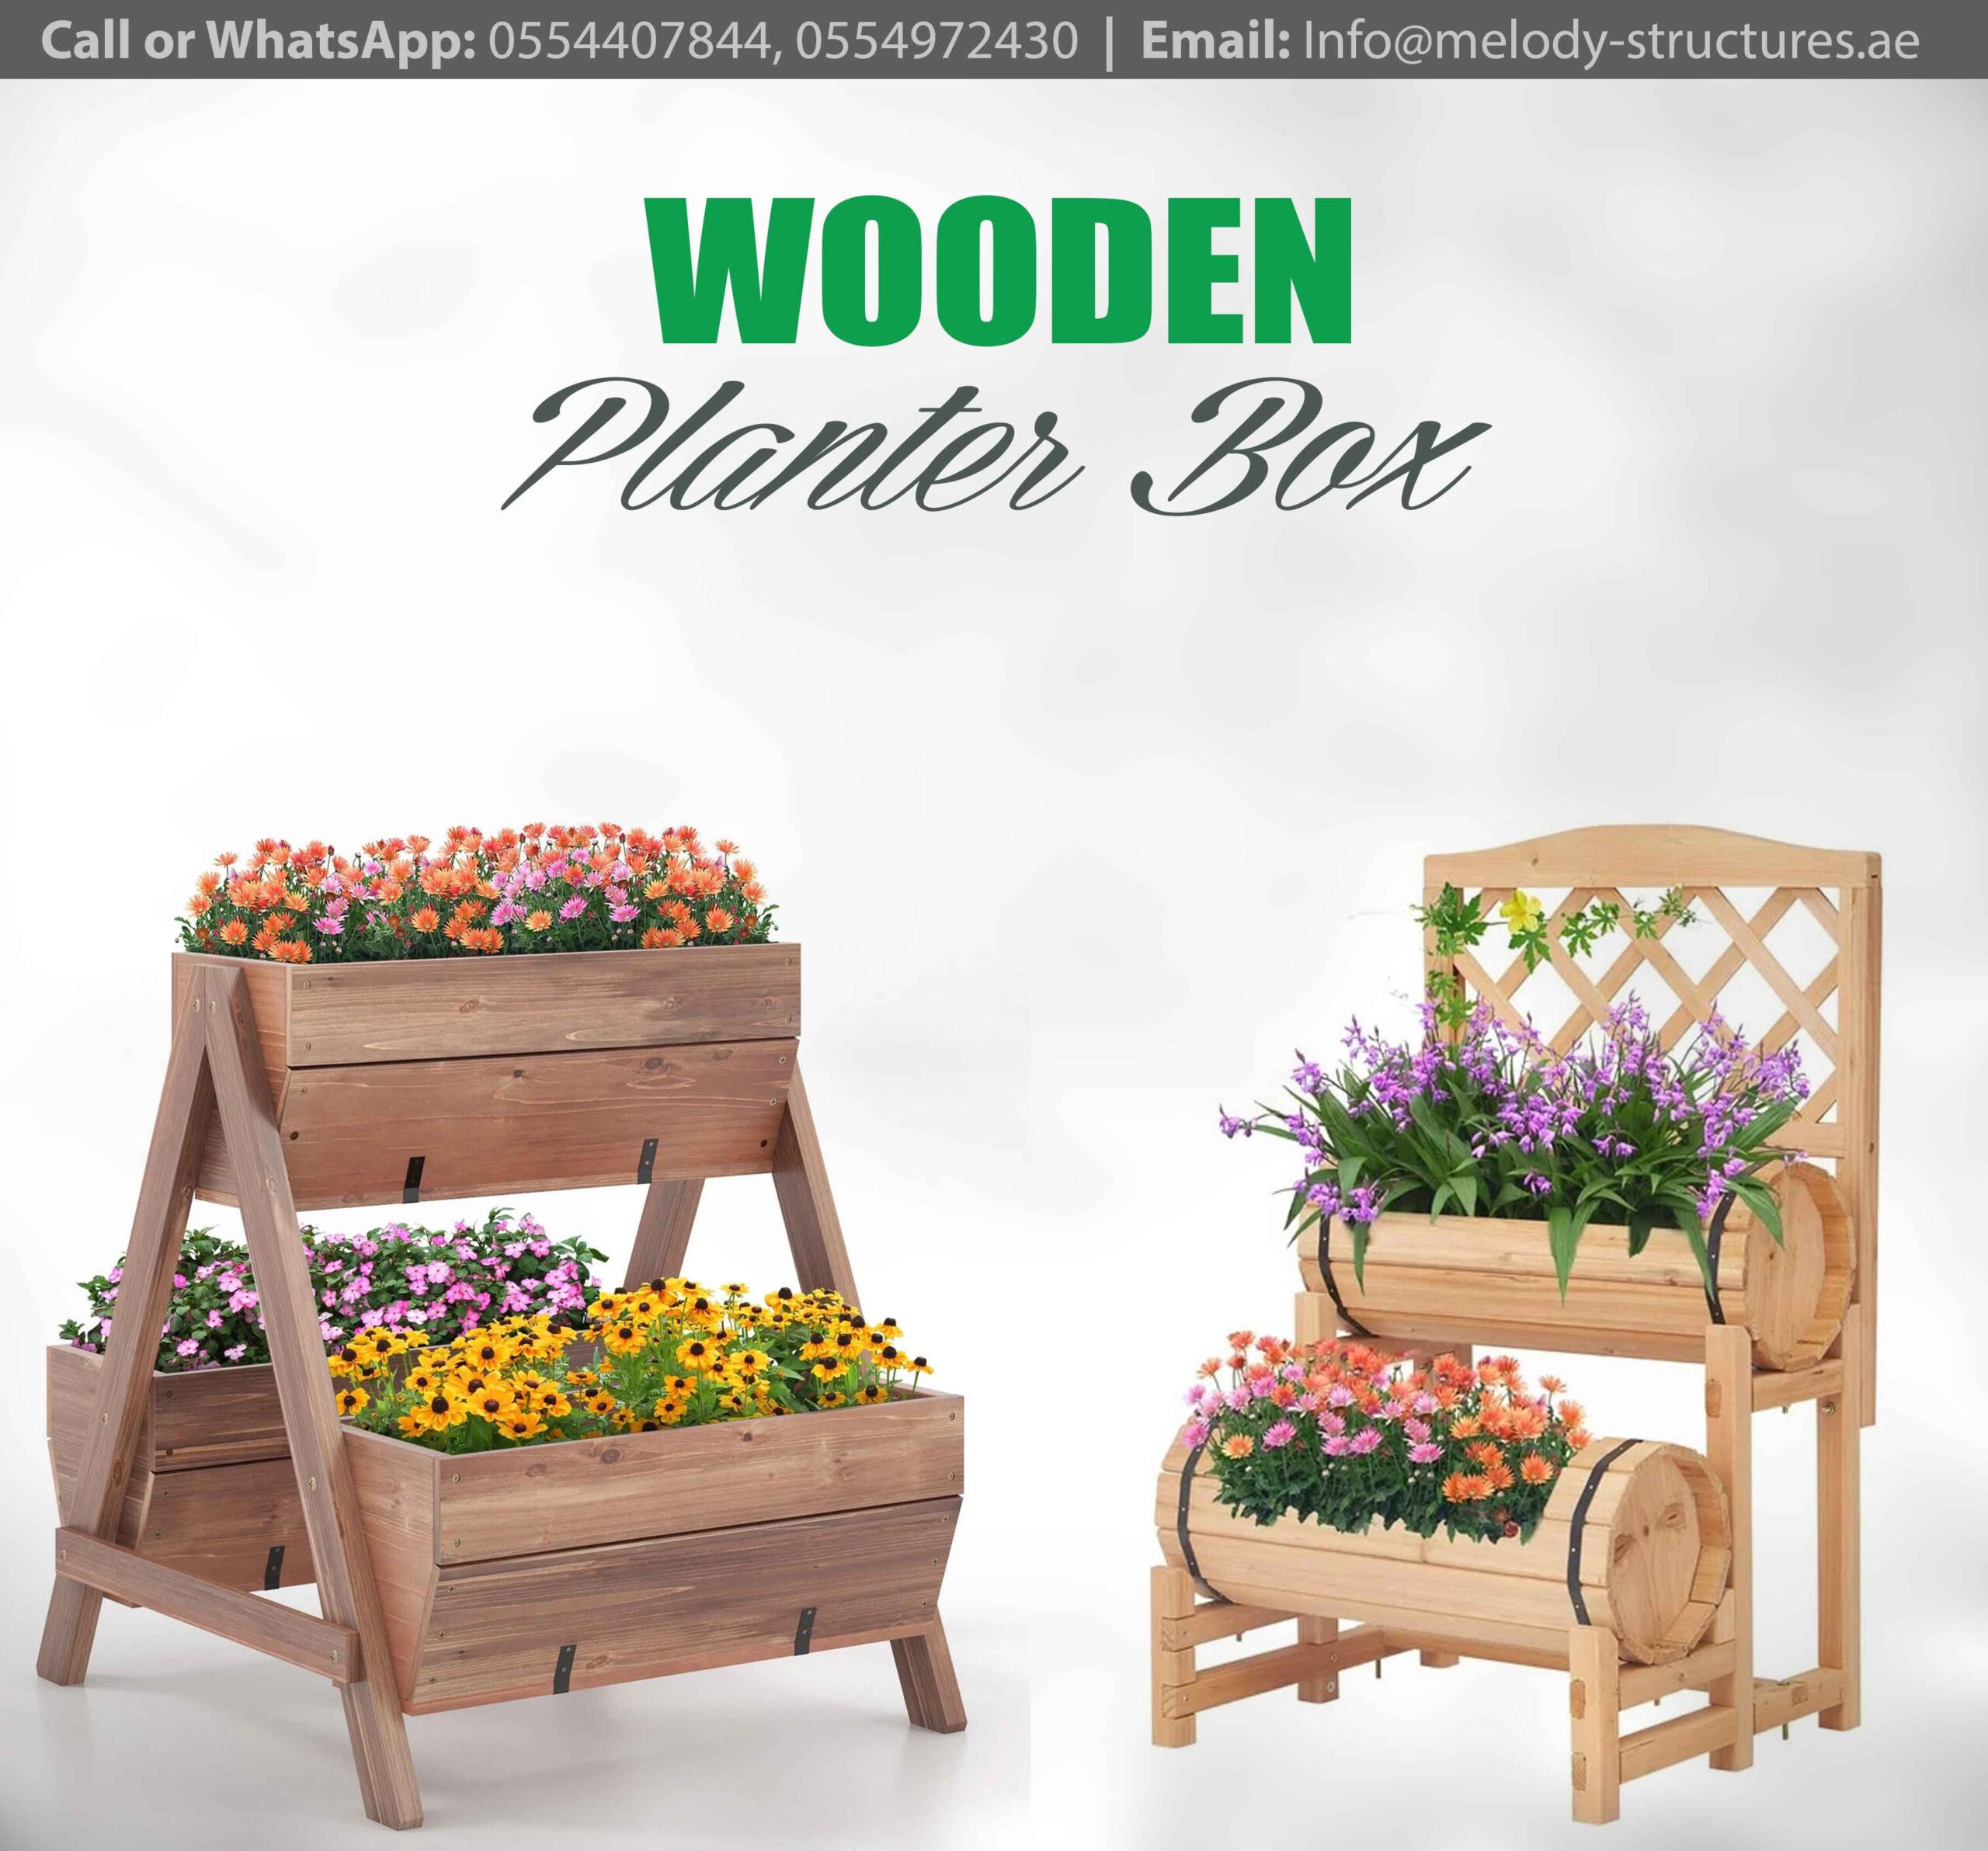 Wooden Planter Box For Garden | Best Planter Box in UAE